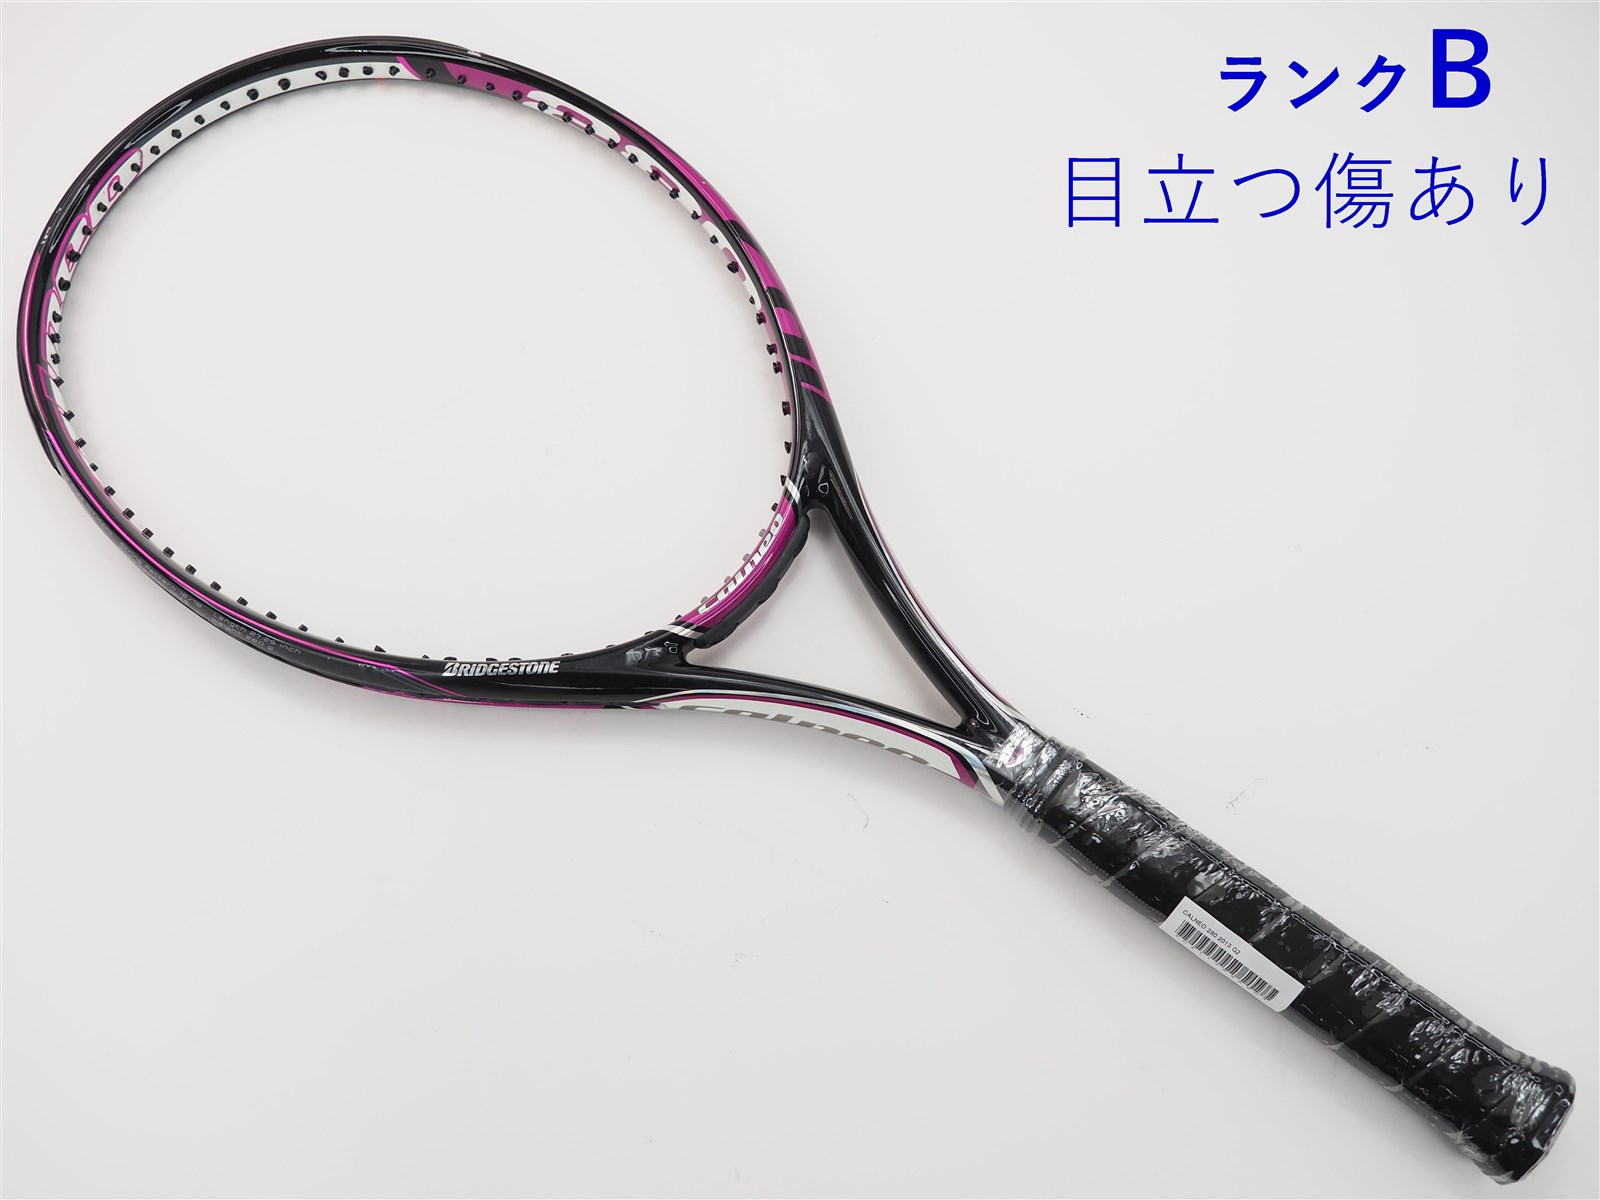 テニスラケット ブリヂストン カルネオ 280 2016年モデル (G2)BRIDGESTONE CALNEO 280 2016